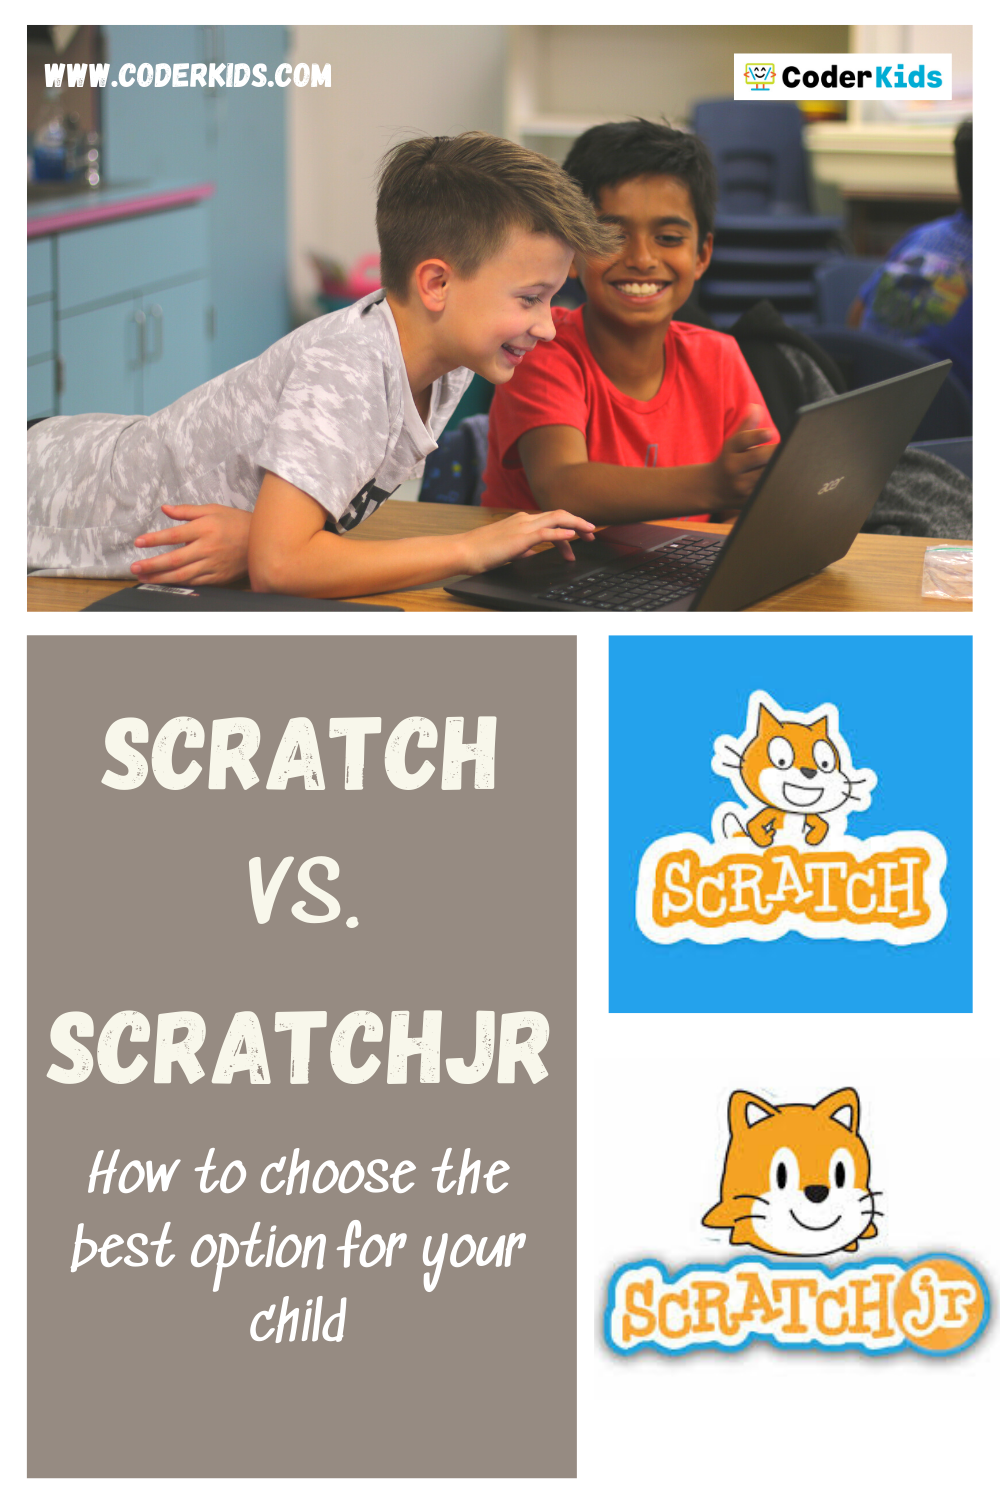 Is ScratchJr safe for kids?